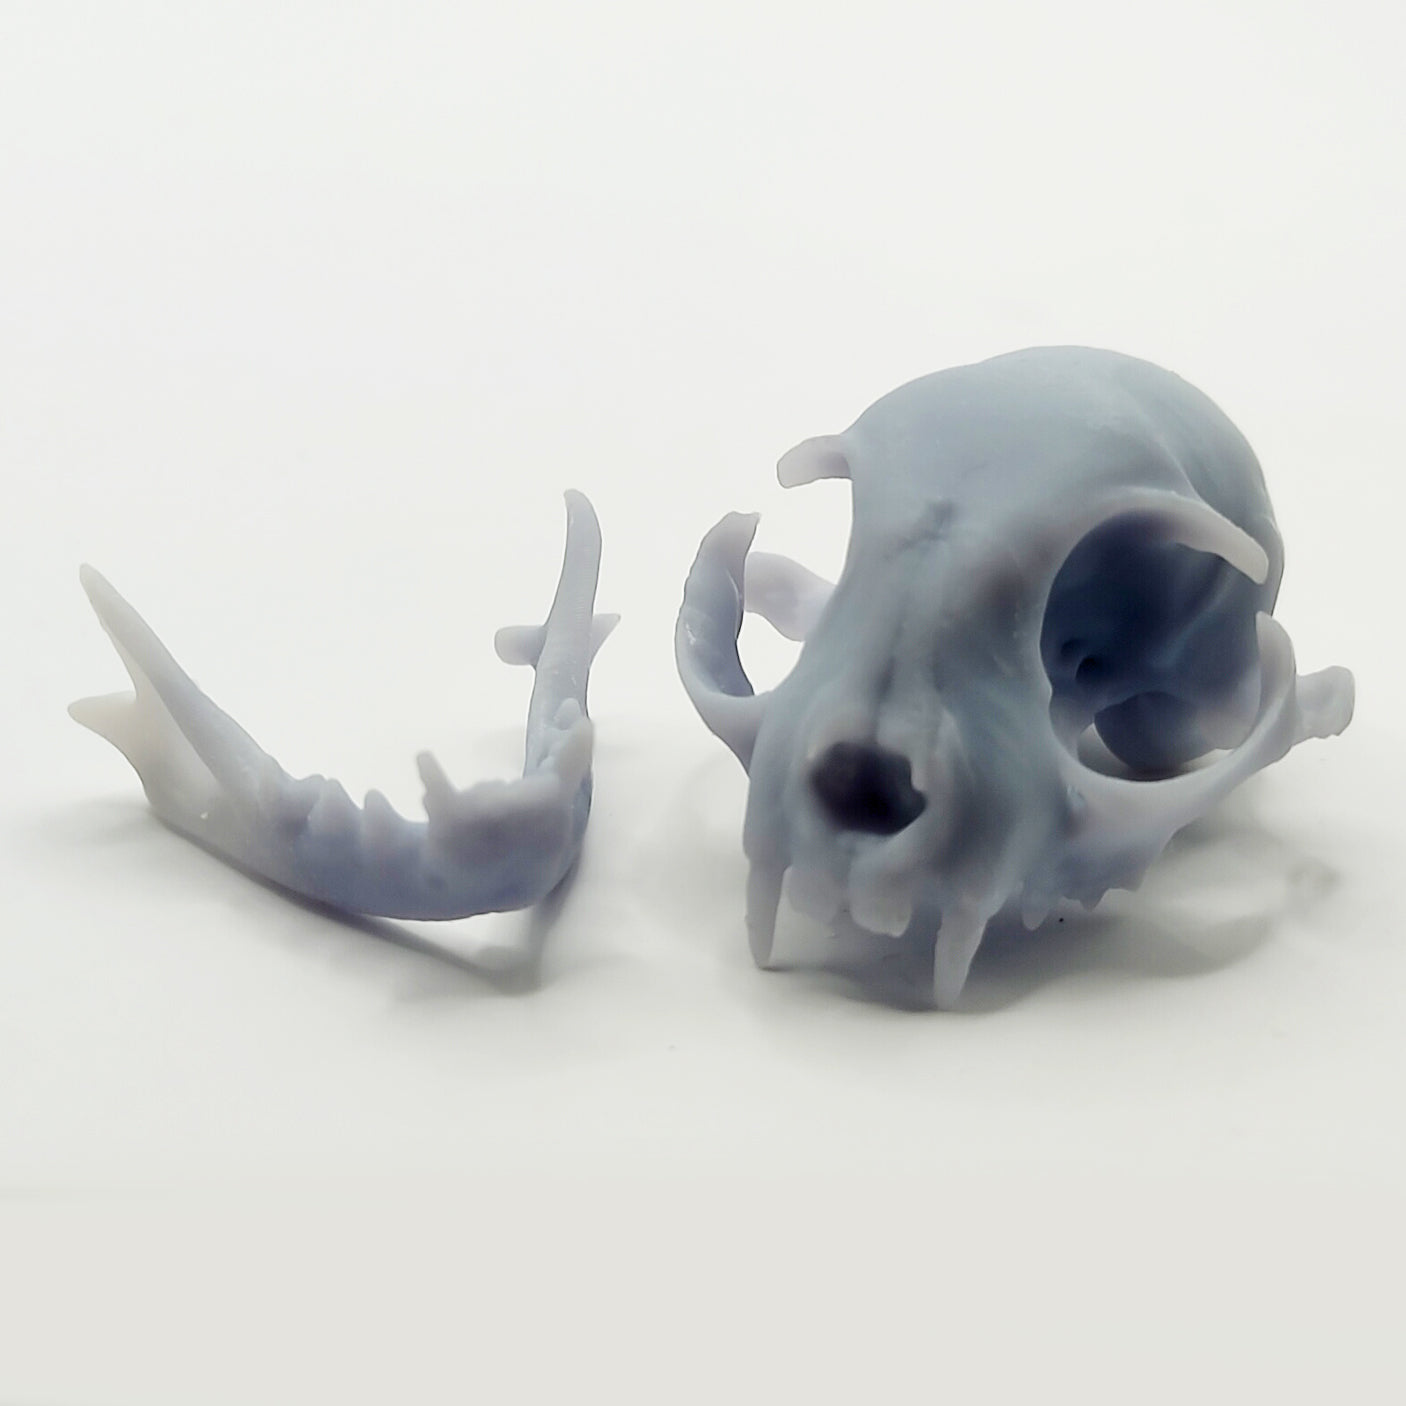 1:6 miniature cat cranium and mandible